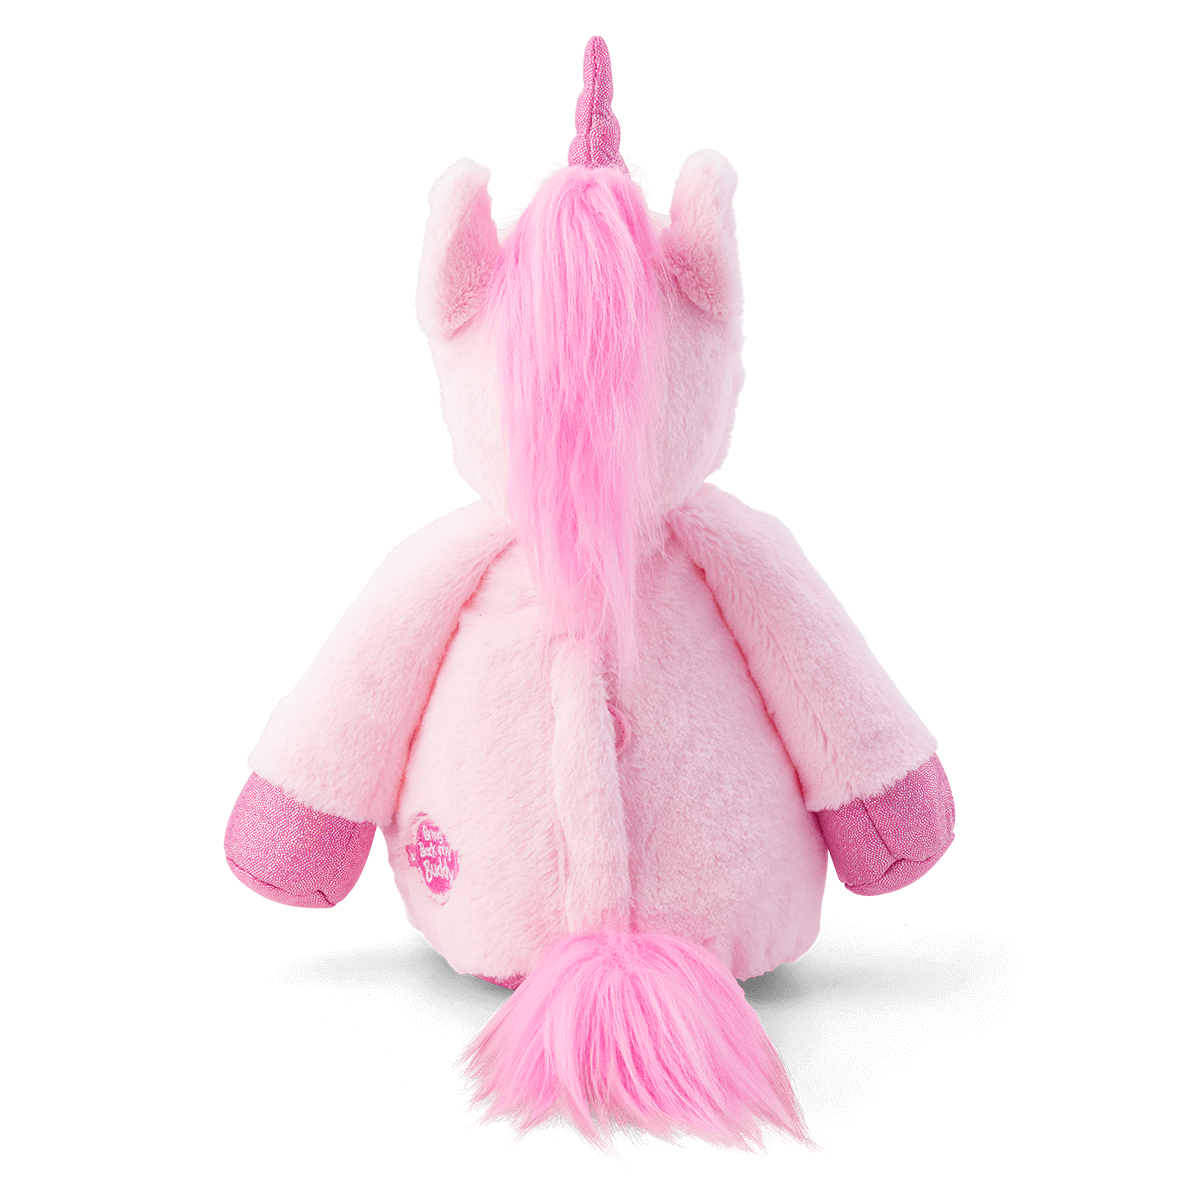 Scentsy Buddy ~  Calypso the Unicorn (Pink Rhubarb Sugar)